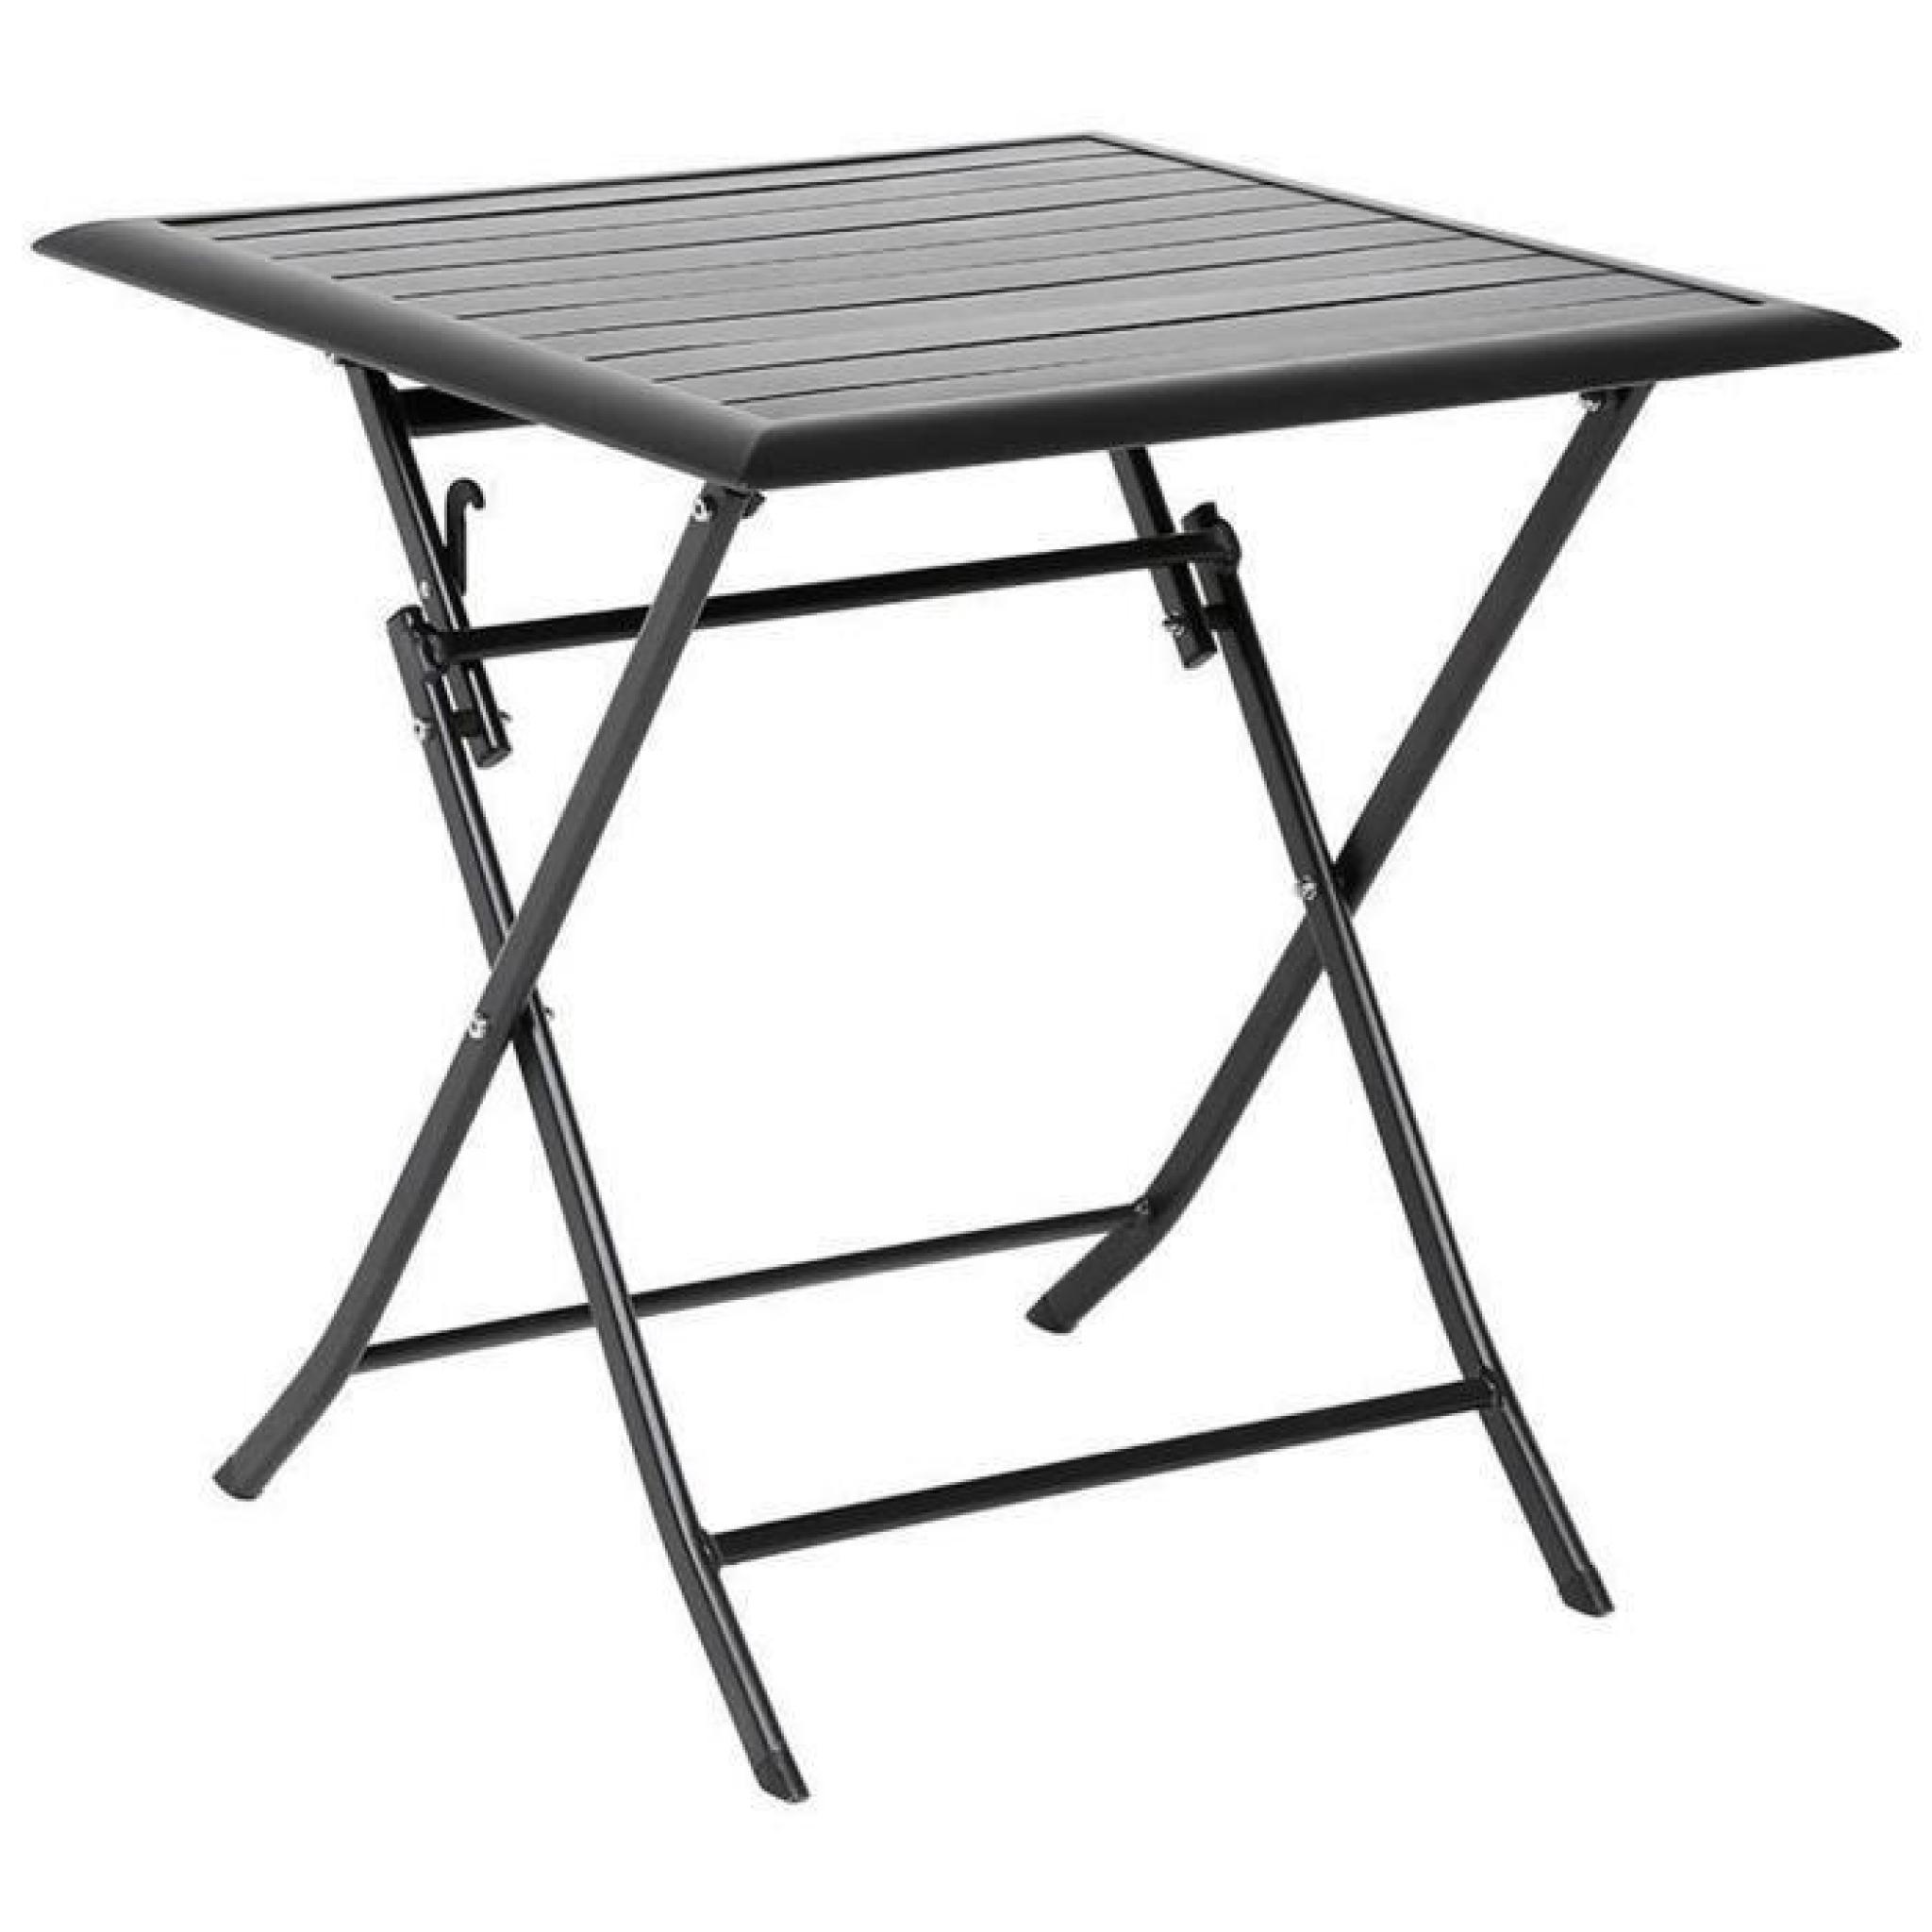 Table pliante carrée en Aluminium coloris noir - Dim : L71cm x P71cm x H71cm 